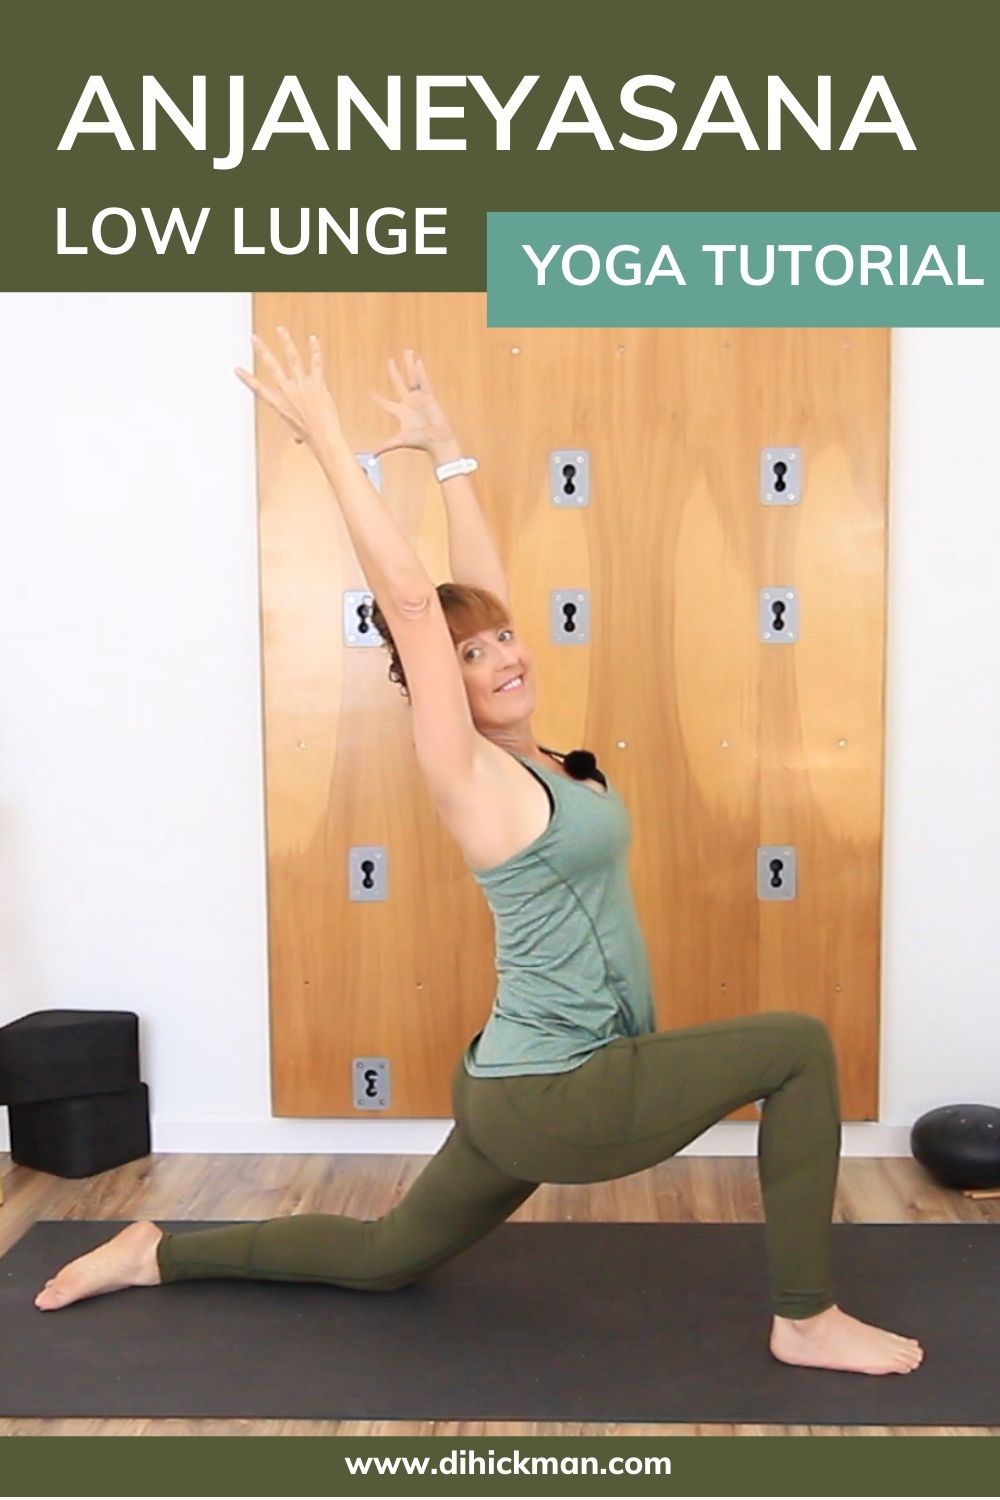 Anjaneyasana low lunge yoga tutorial